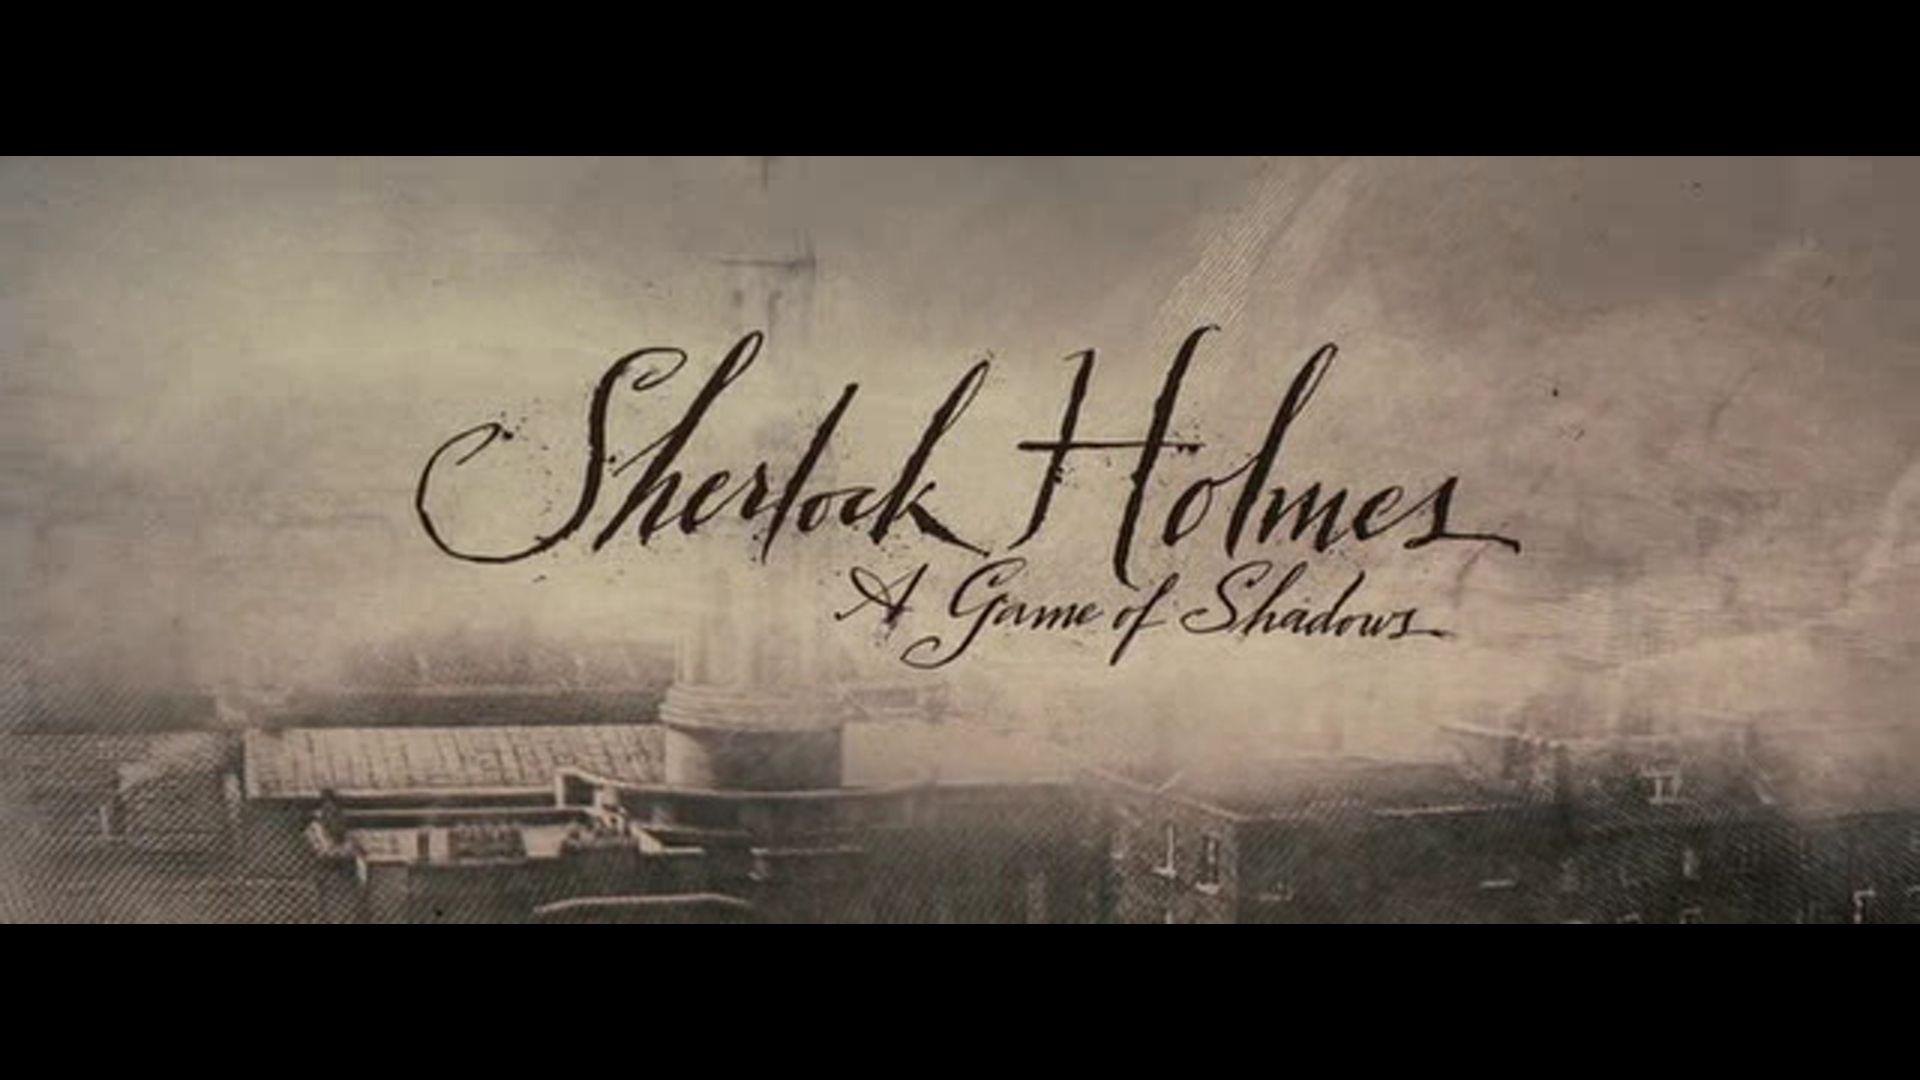 best Moving Image: Sherlock holmes image